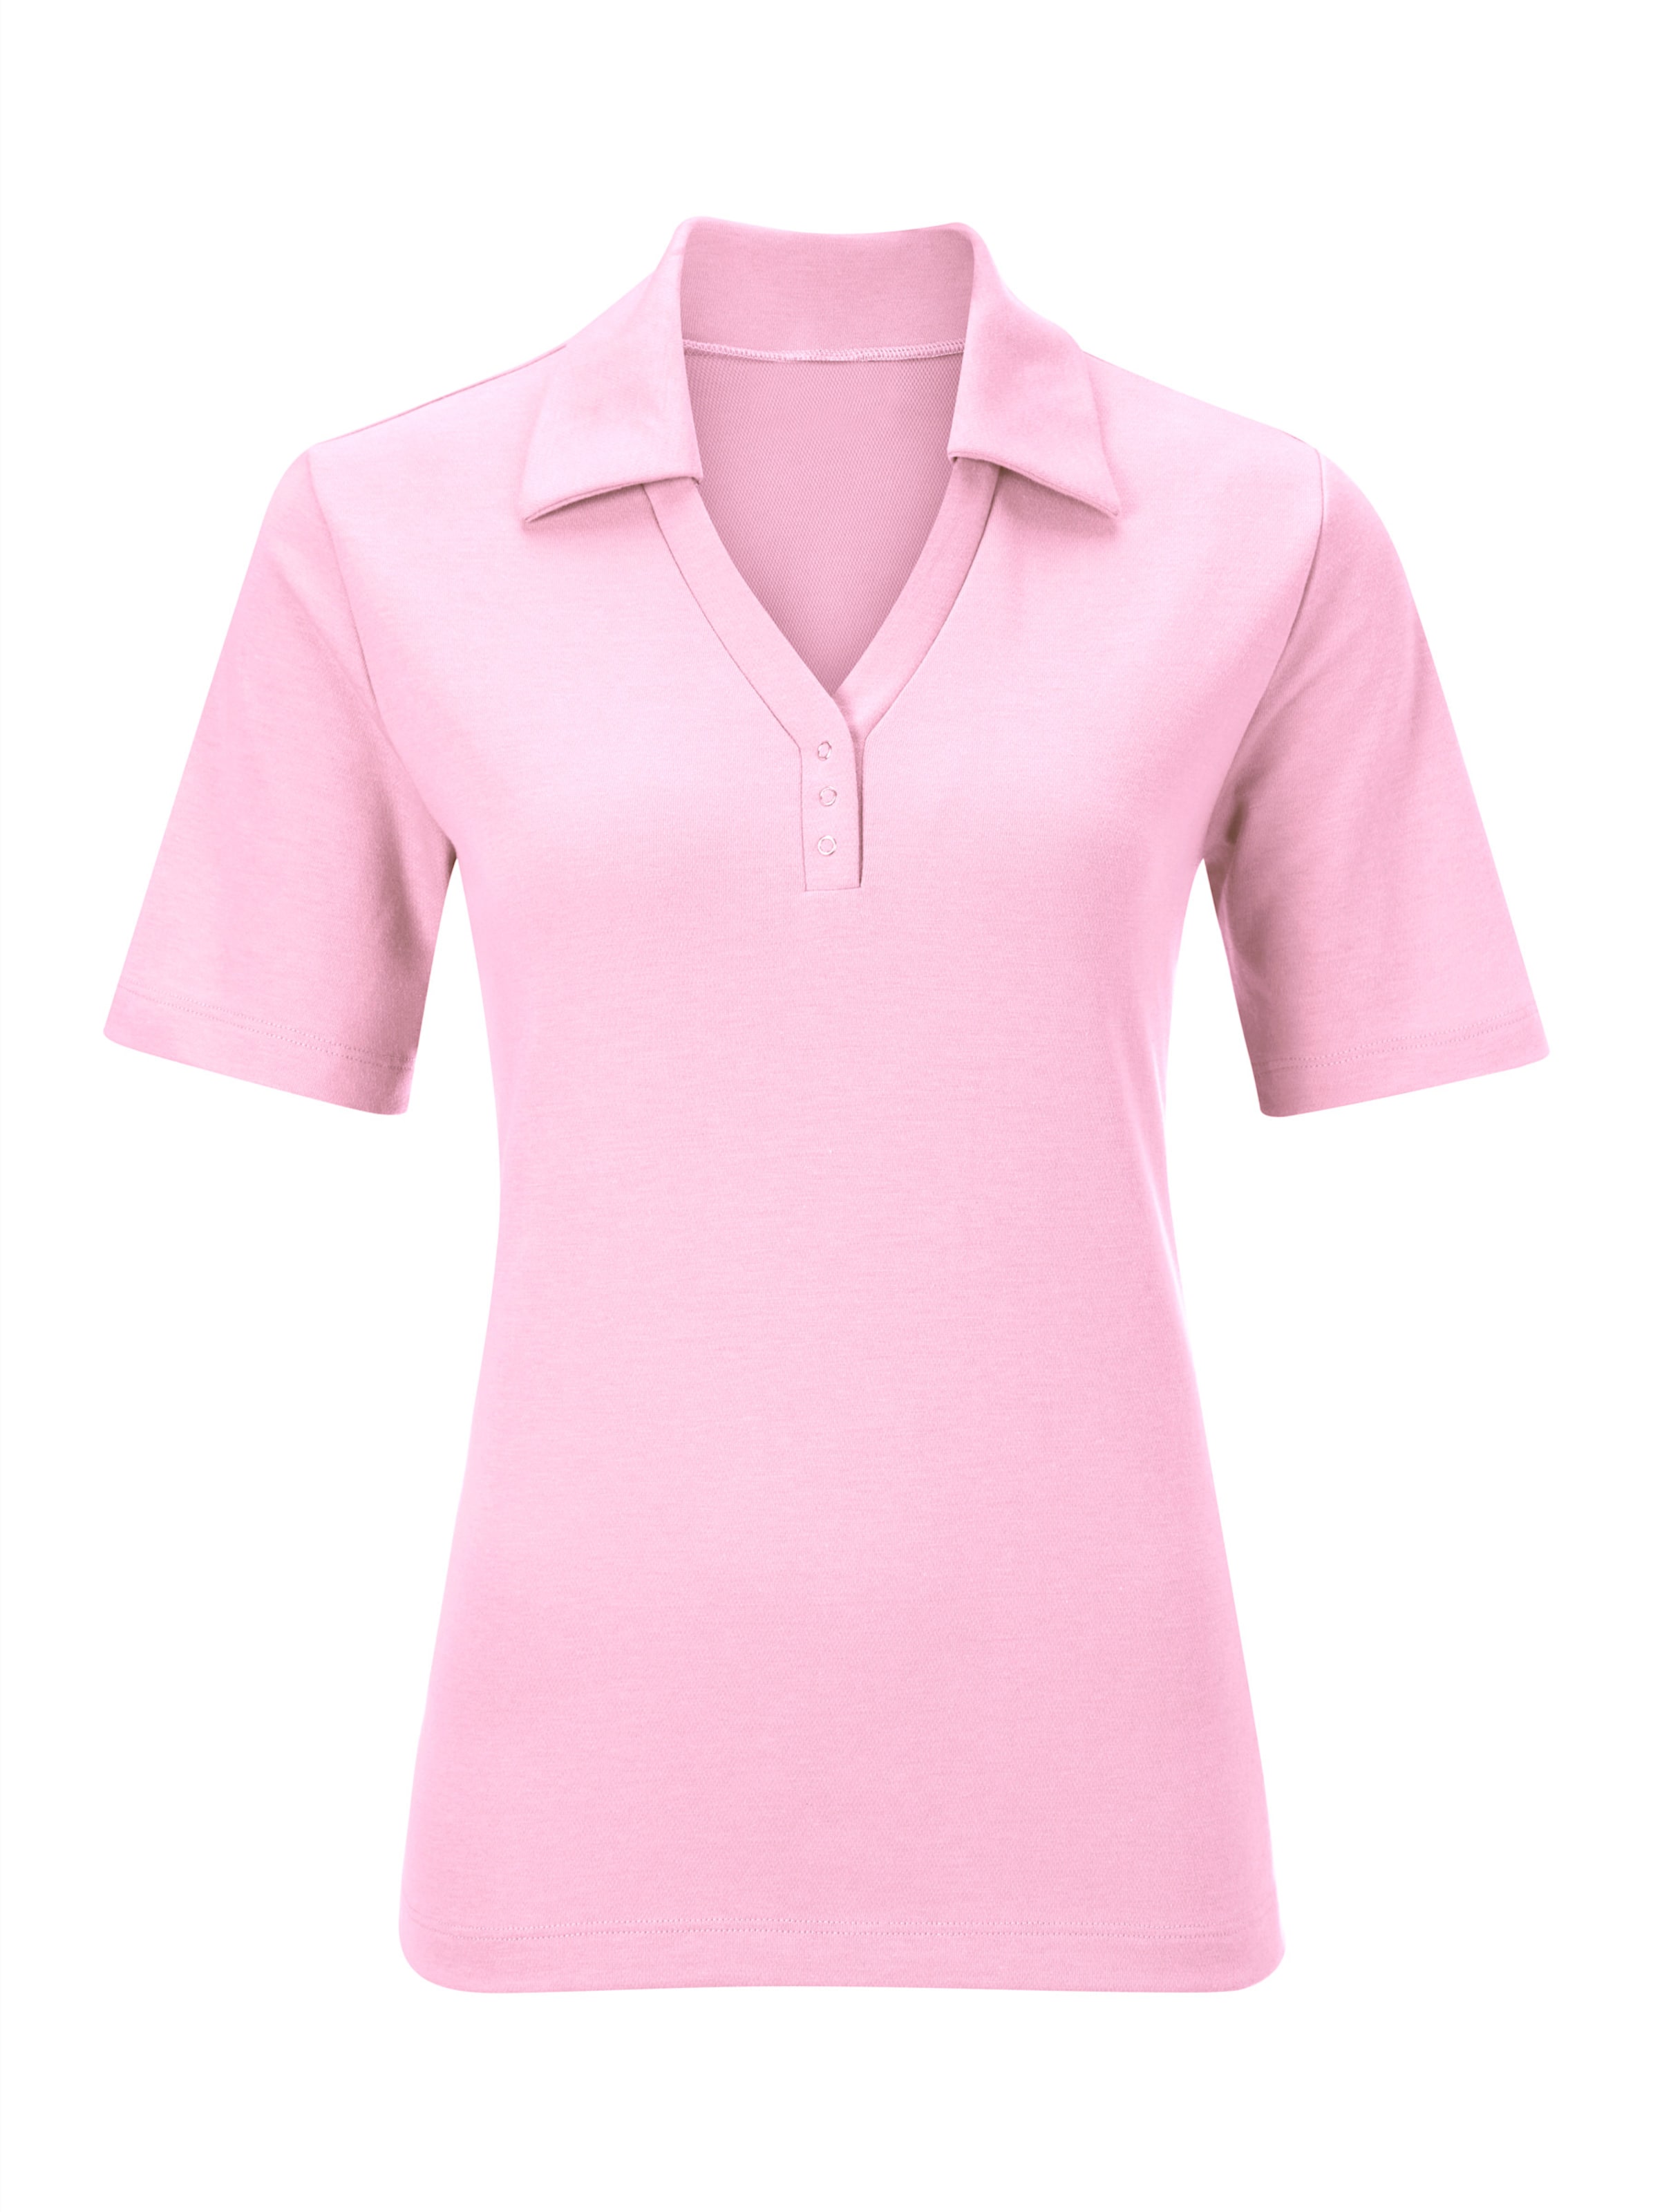 Poloshirt mit günstig Kaufen-Poloshirt in rosé von heine. Poloshirt in rosé von heine <![CDATA[Shirt mit offener Kragenlösung. Kleine Knopfleiste mit Druckknöpfen. Seitenschlitze. Spezielle Stay Cool & Dry-Ausrüstung.]]>. 